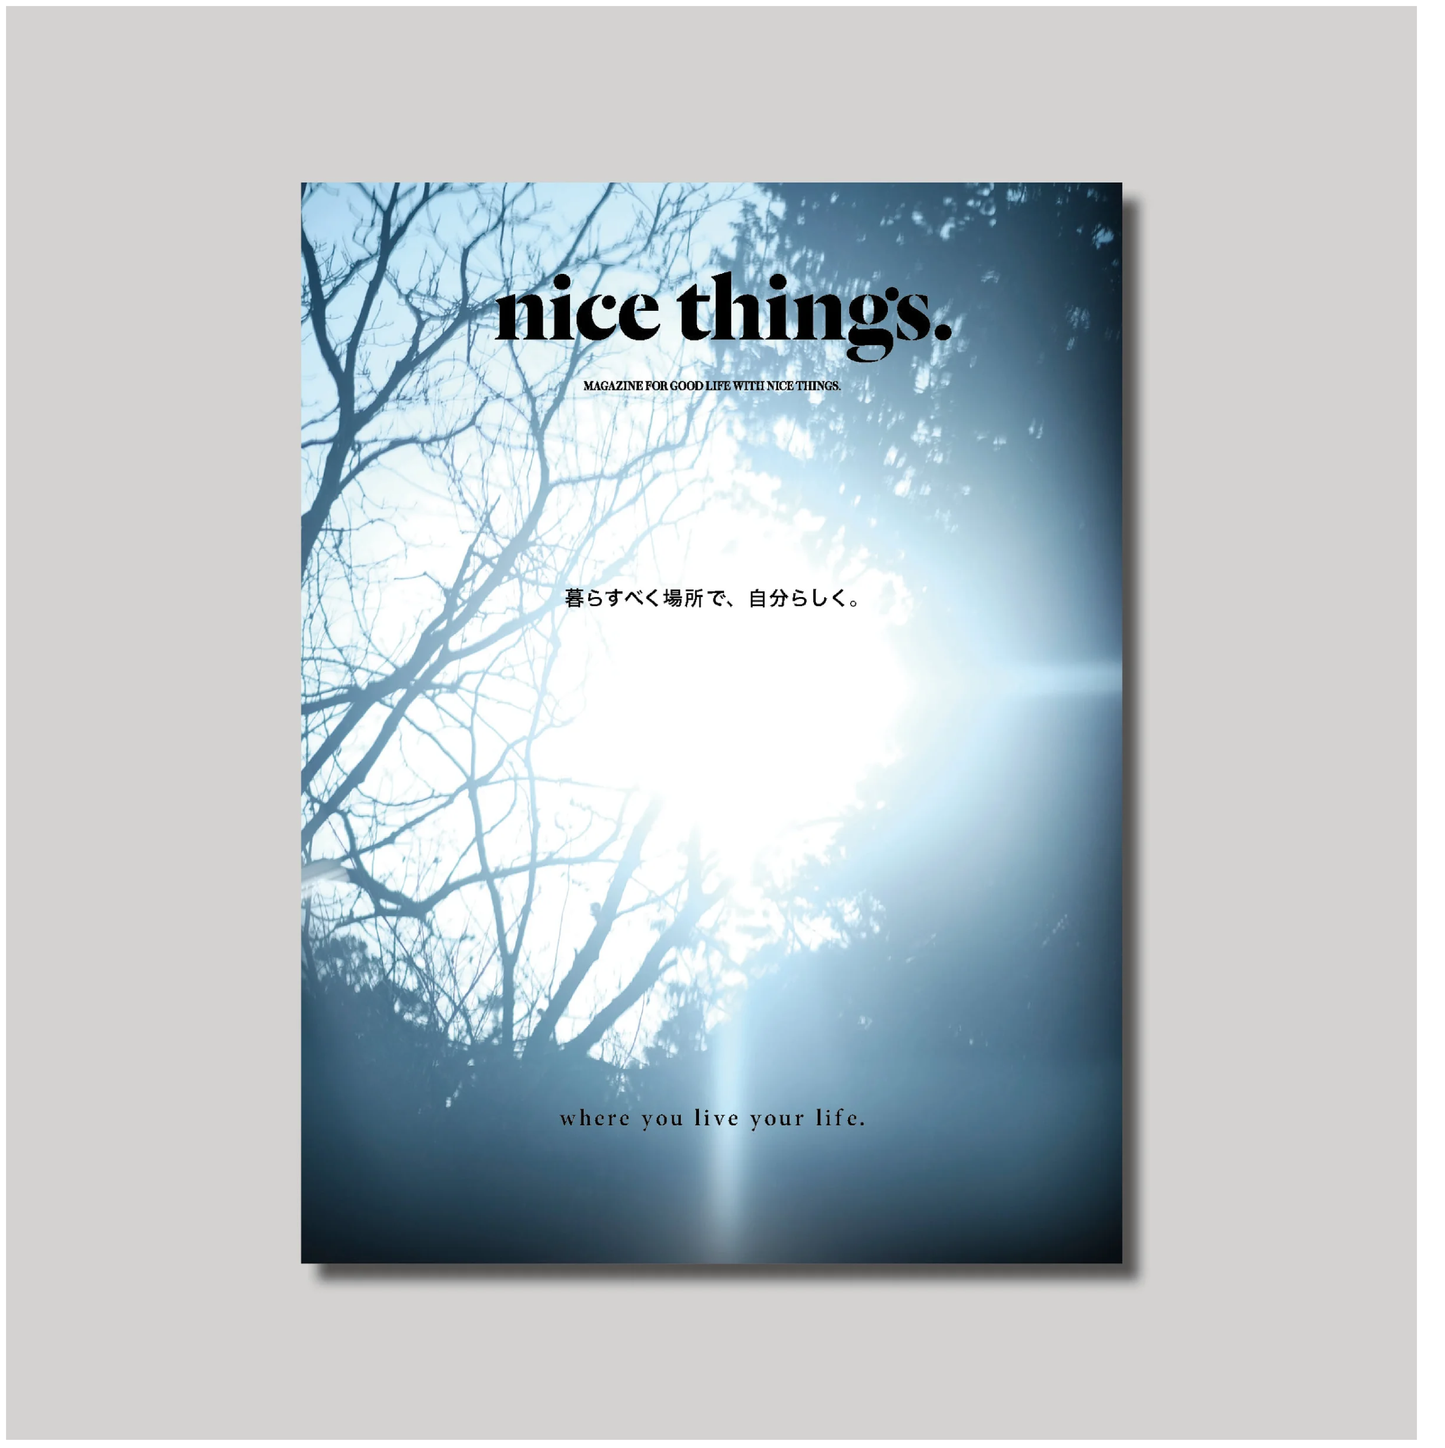 nice things.issue71 「暮らすべく場所で、自分らしく。」